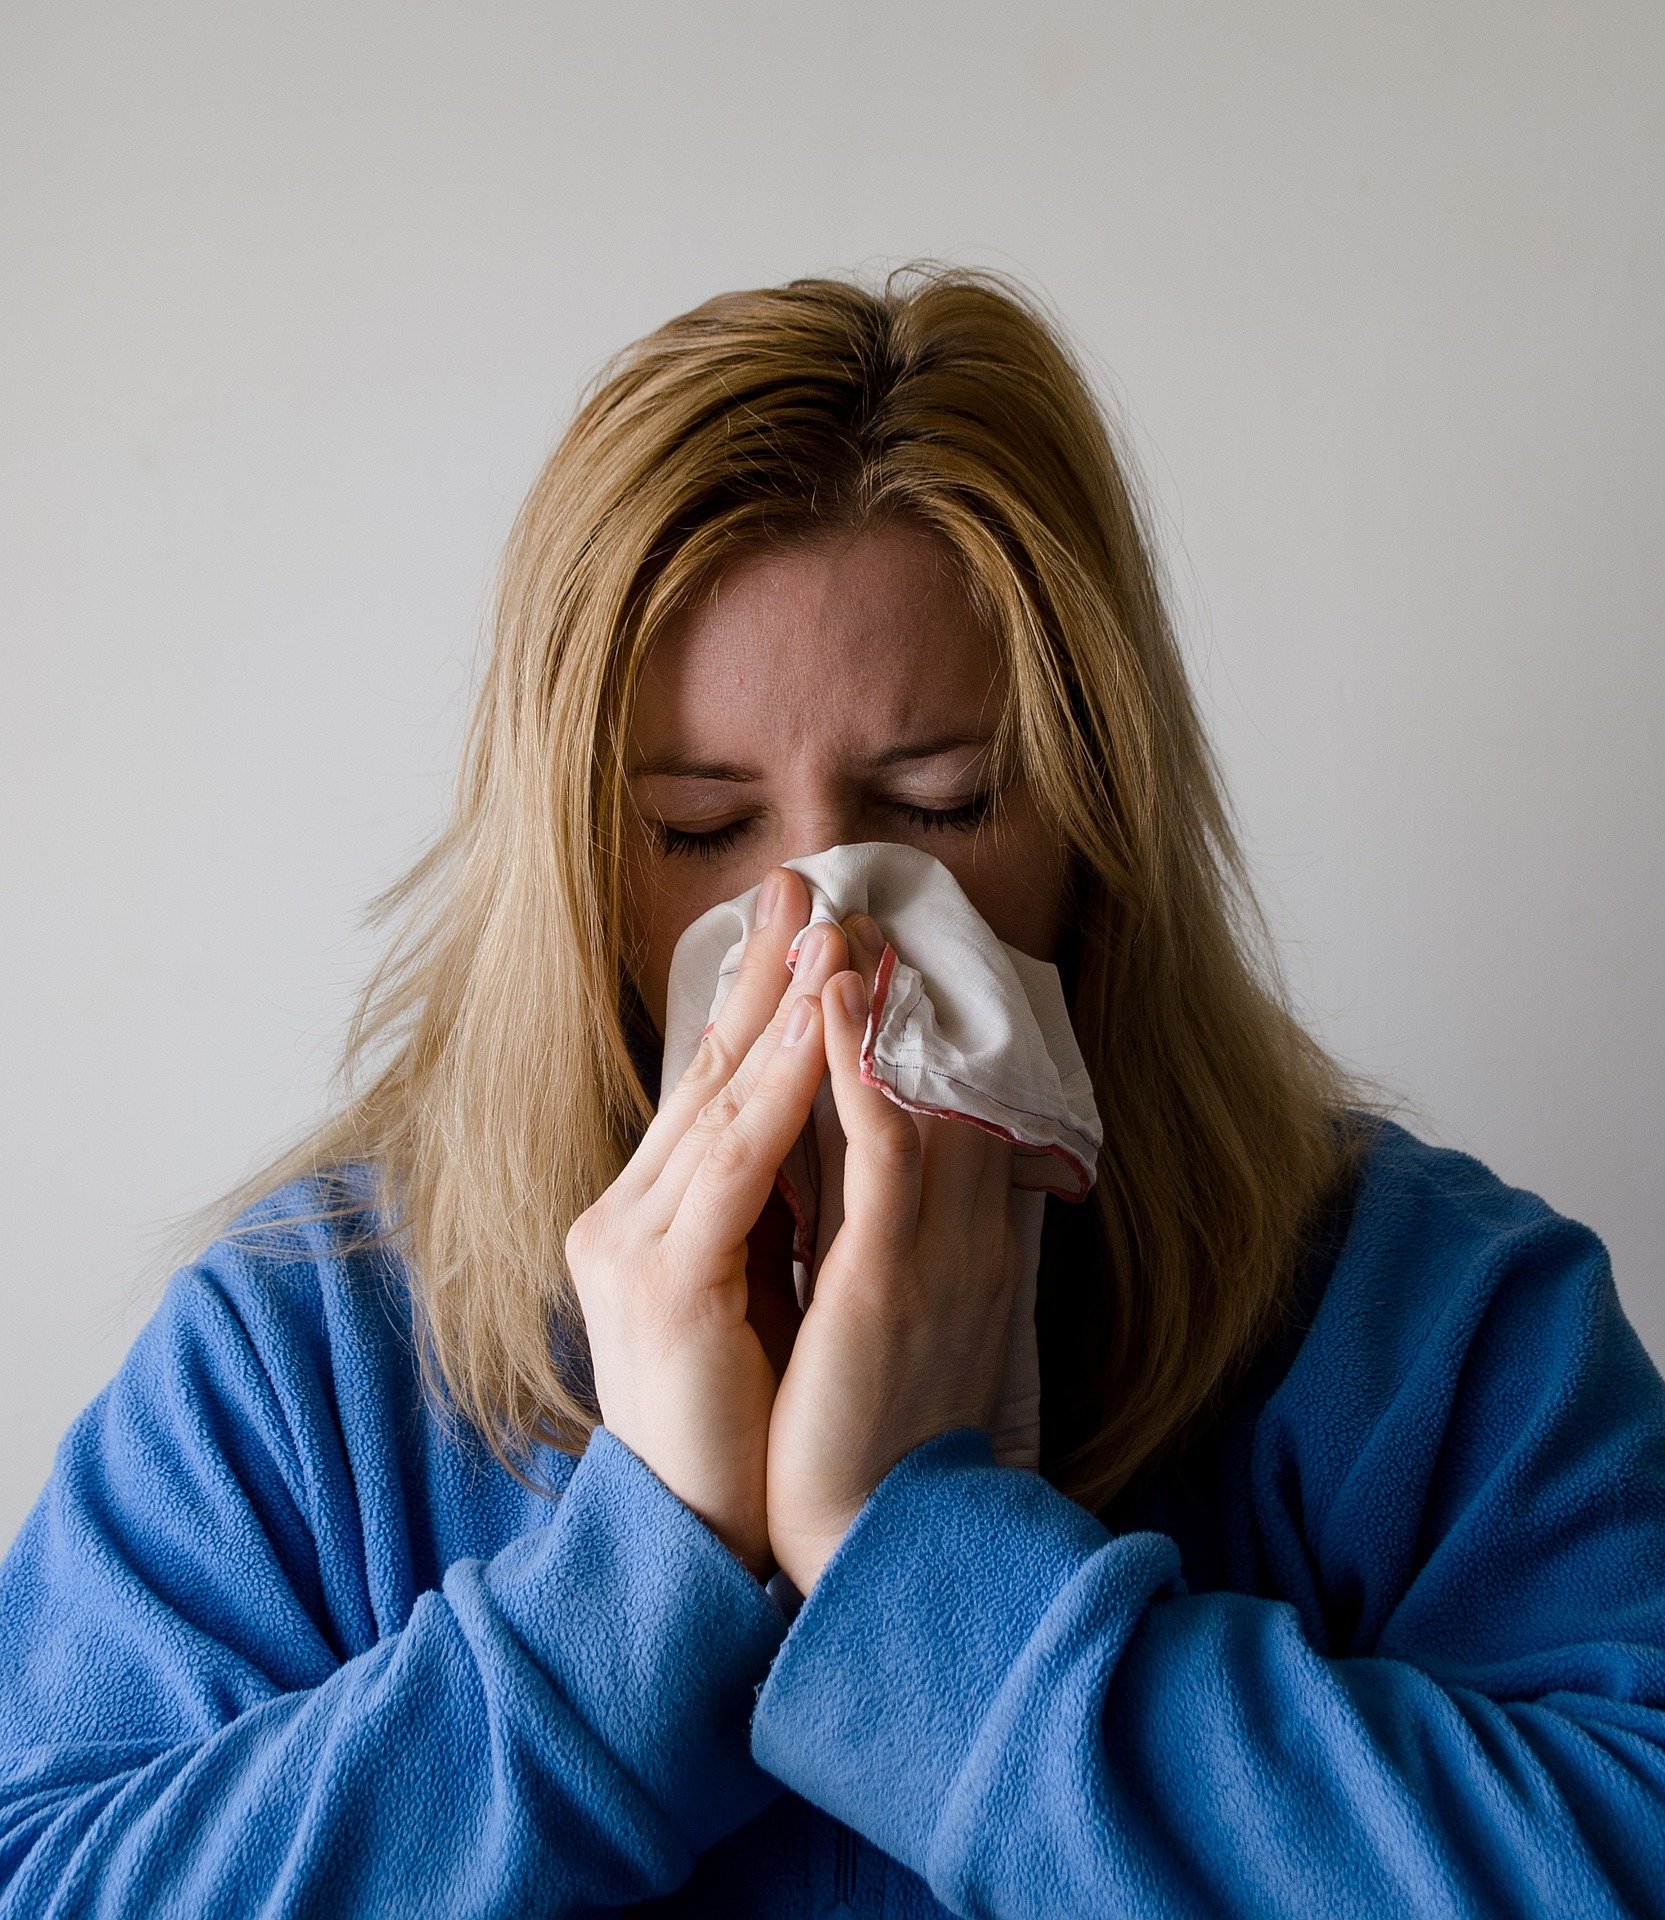 La gripe ha comenzado a remitir en Estados Unidos tras un inicio de temporada brutal